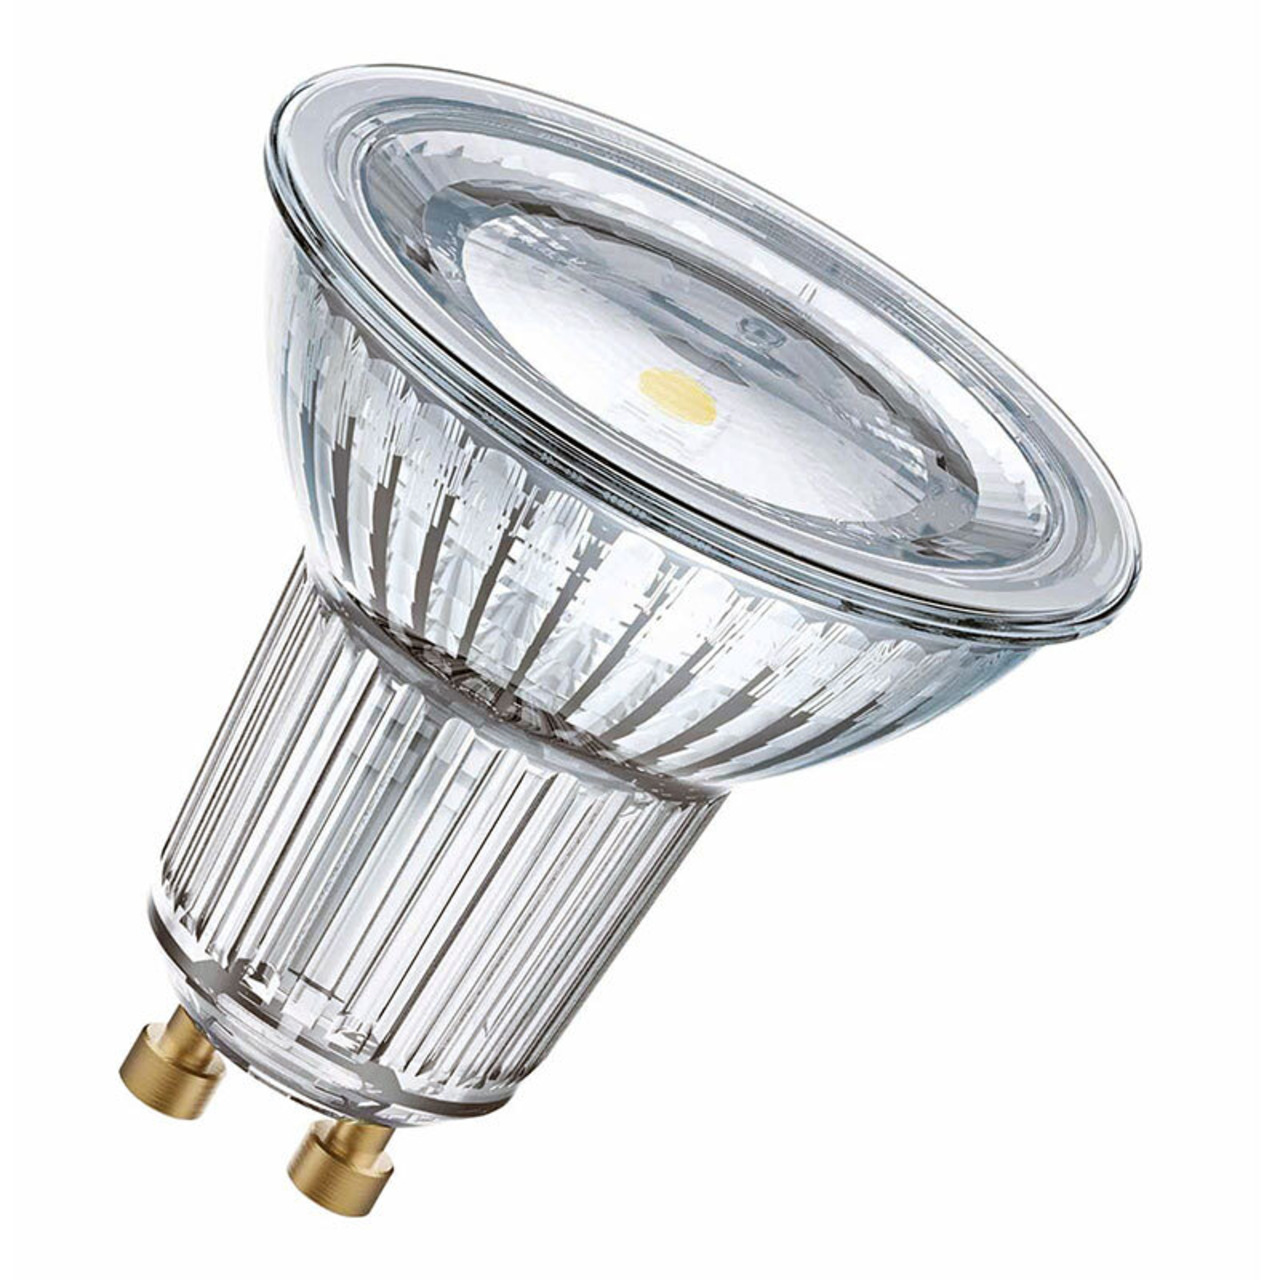 OSRAM LED STAR 4-3-W-GU10-LED-Lampe mit Glas-Reflektor- neutralweiss- 120-